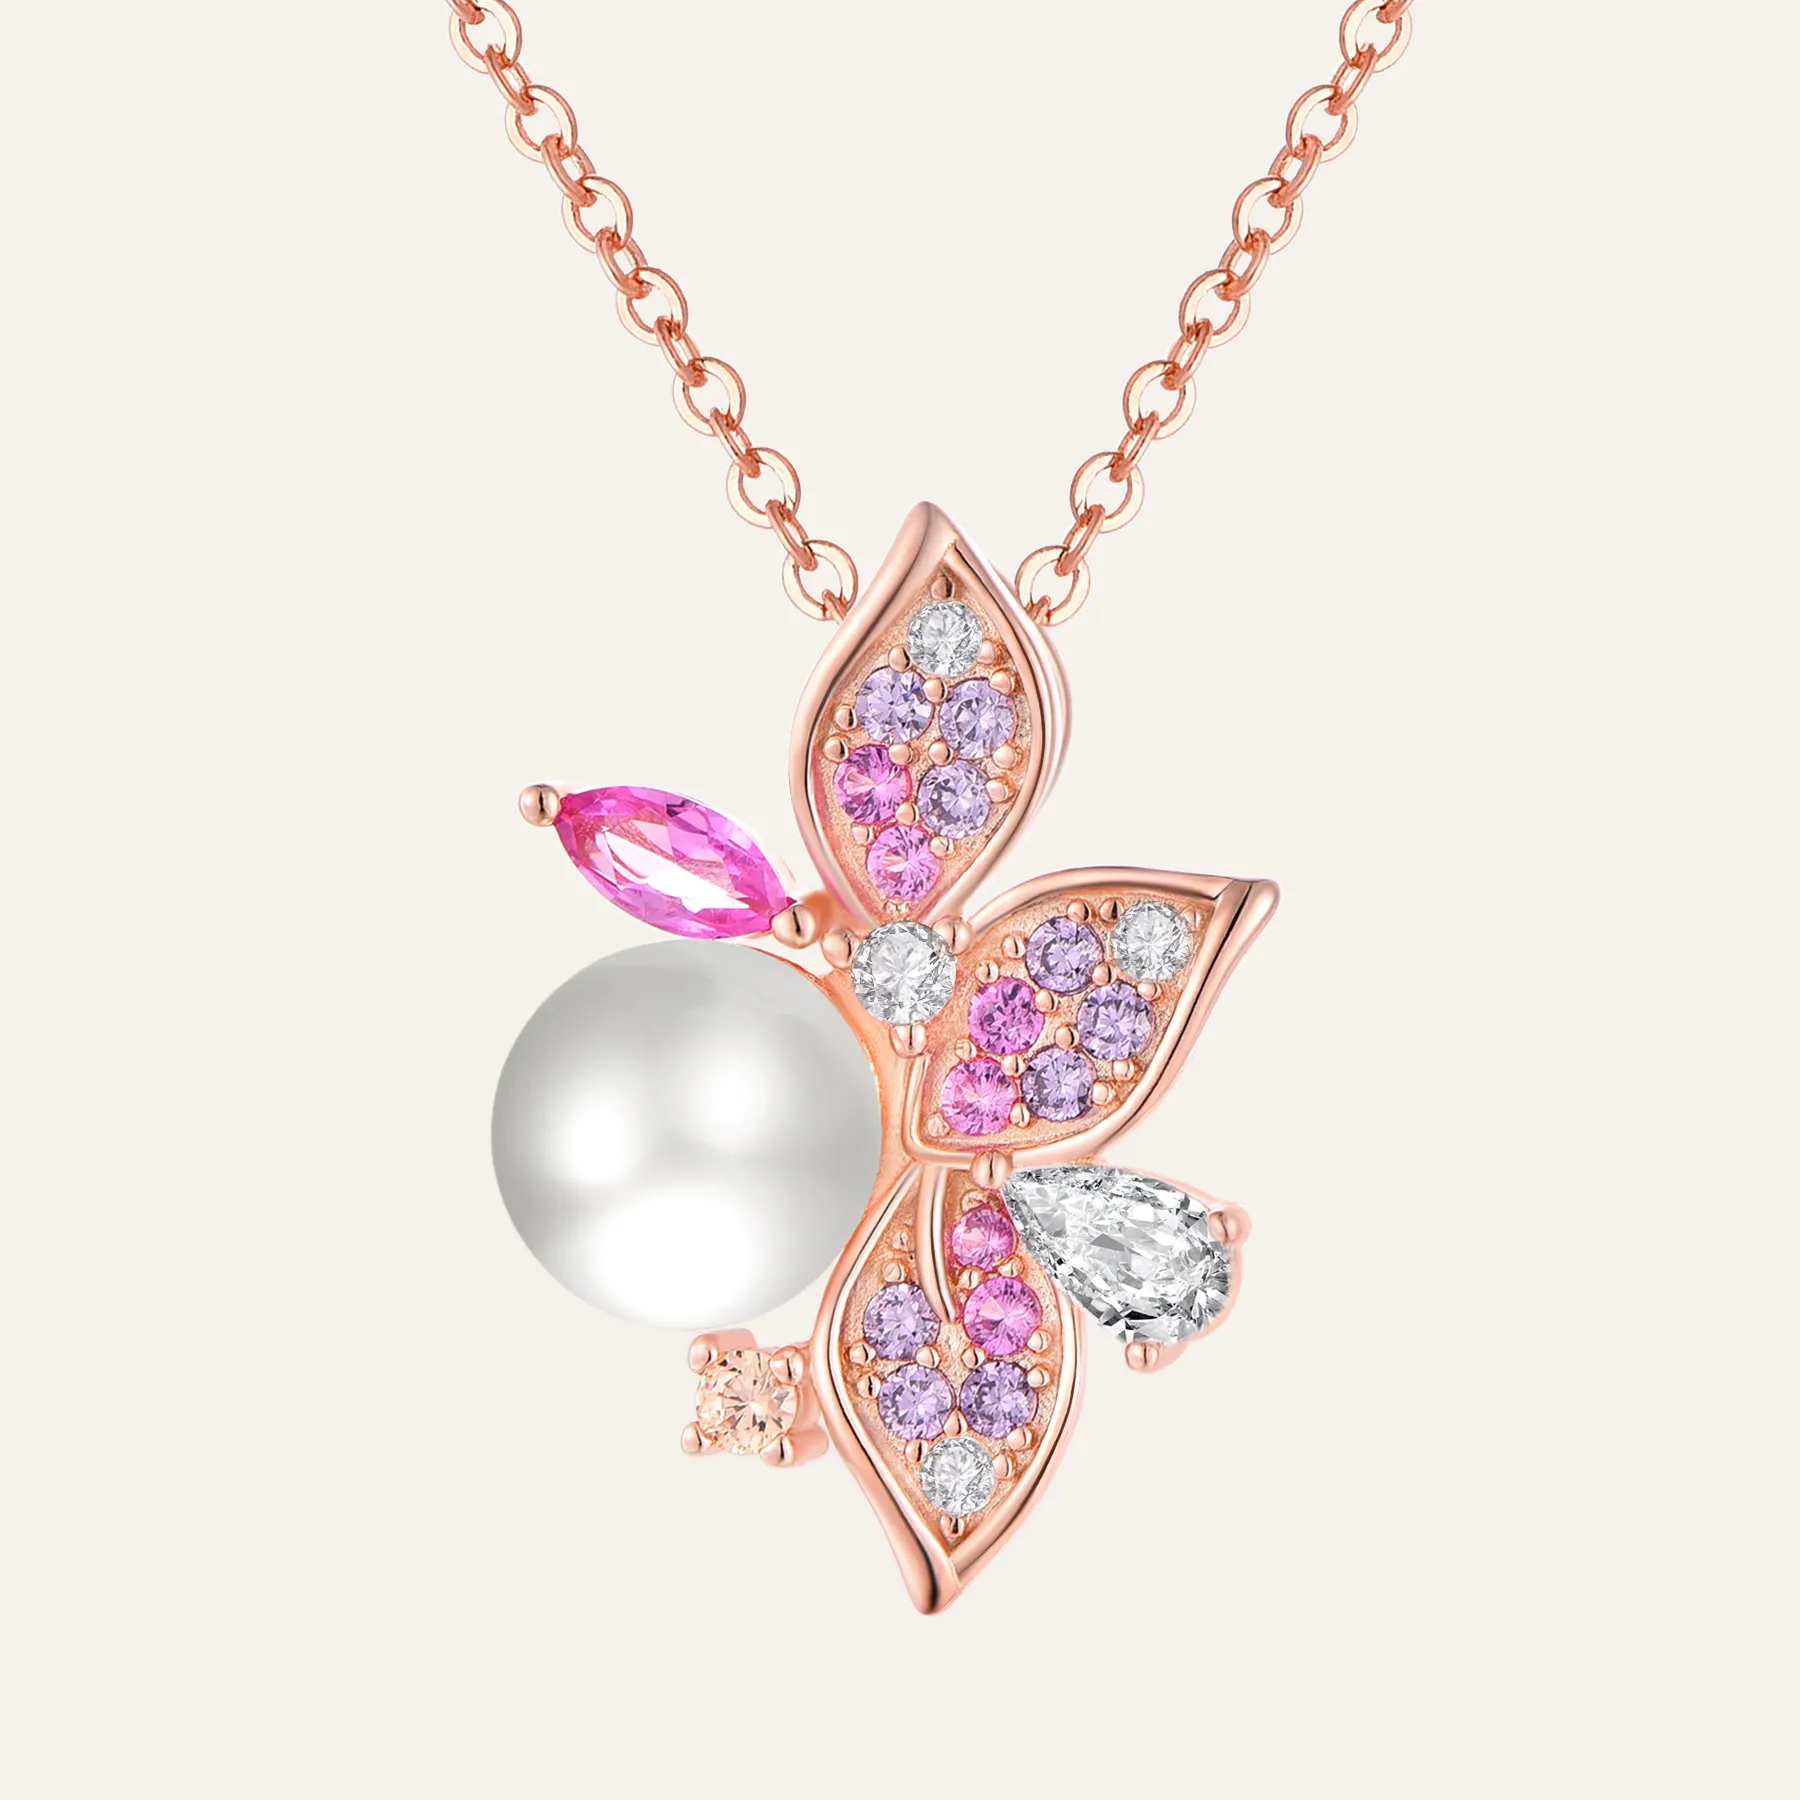 Venta al por mayor de oro rosa de diamantes de imitación perla Spinner flor collar giratorio S925 collar de plata esterlina para las mujeres